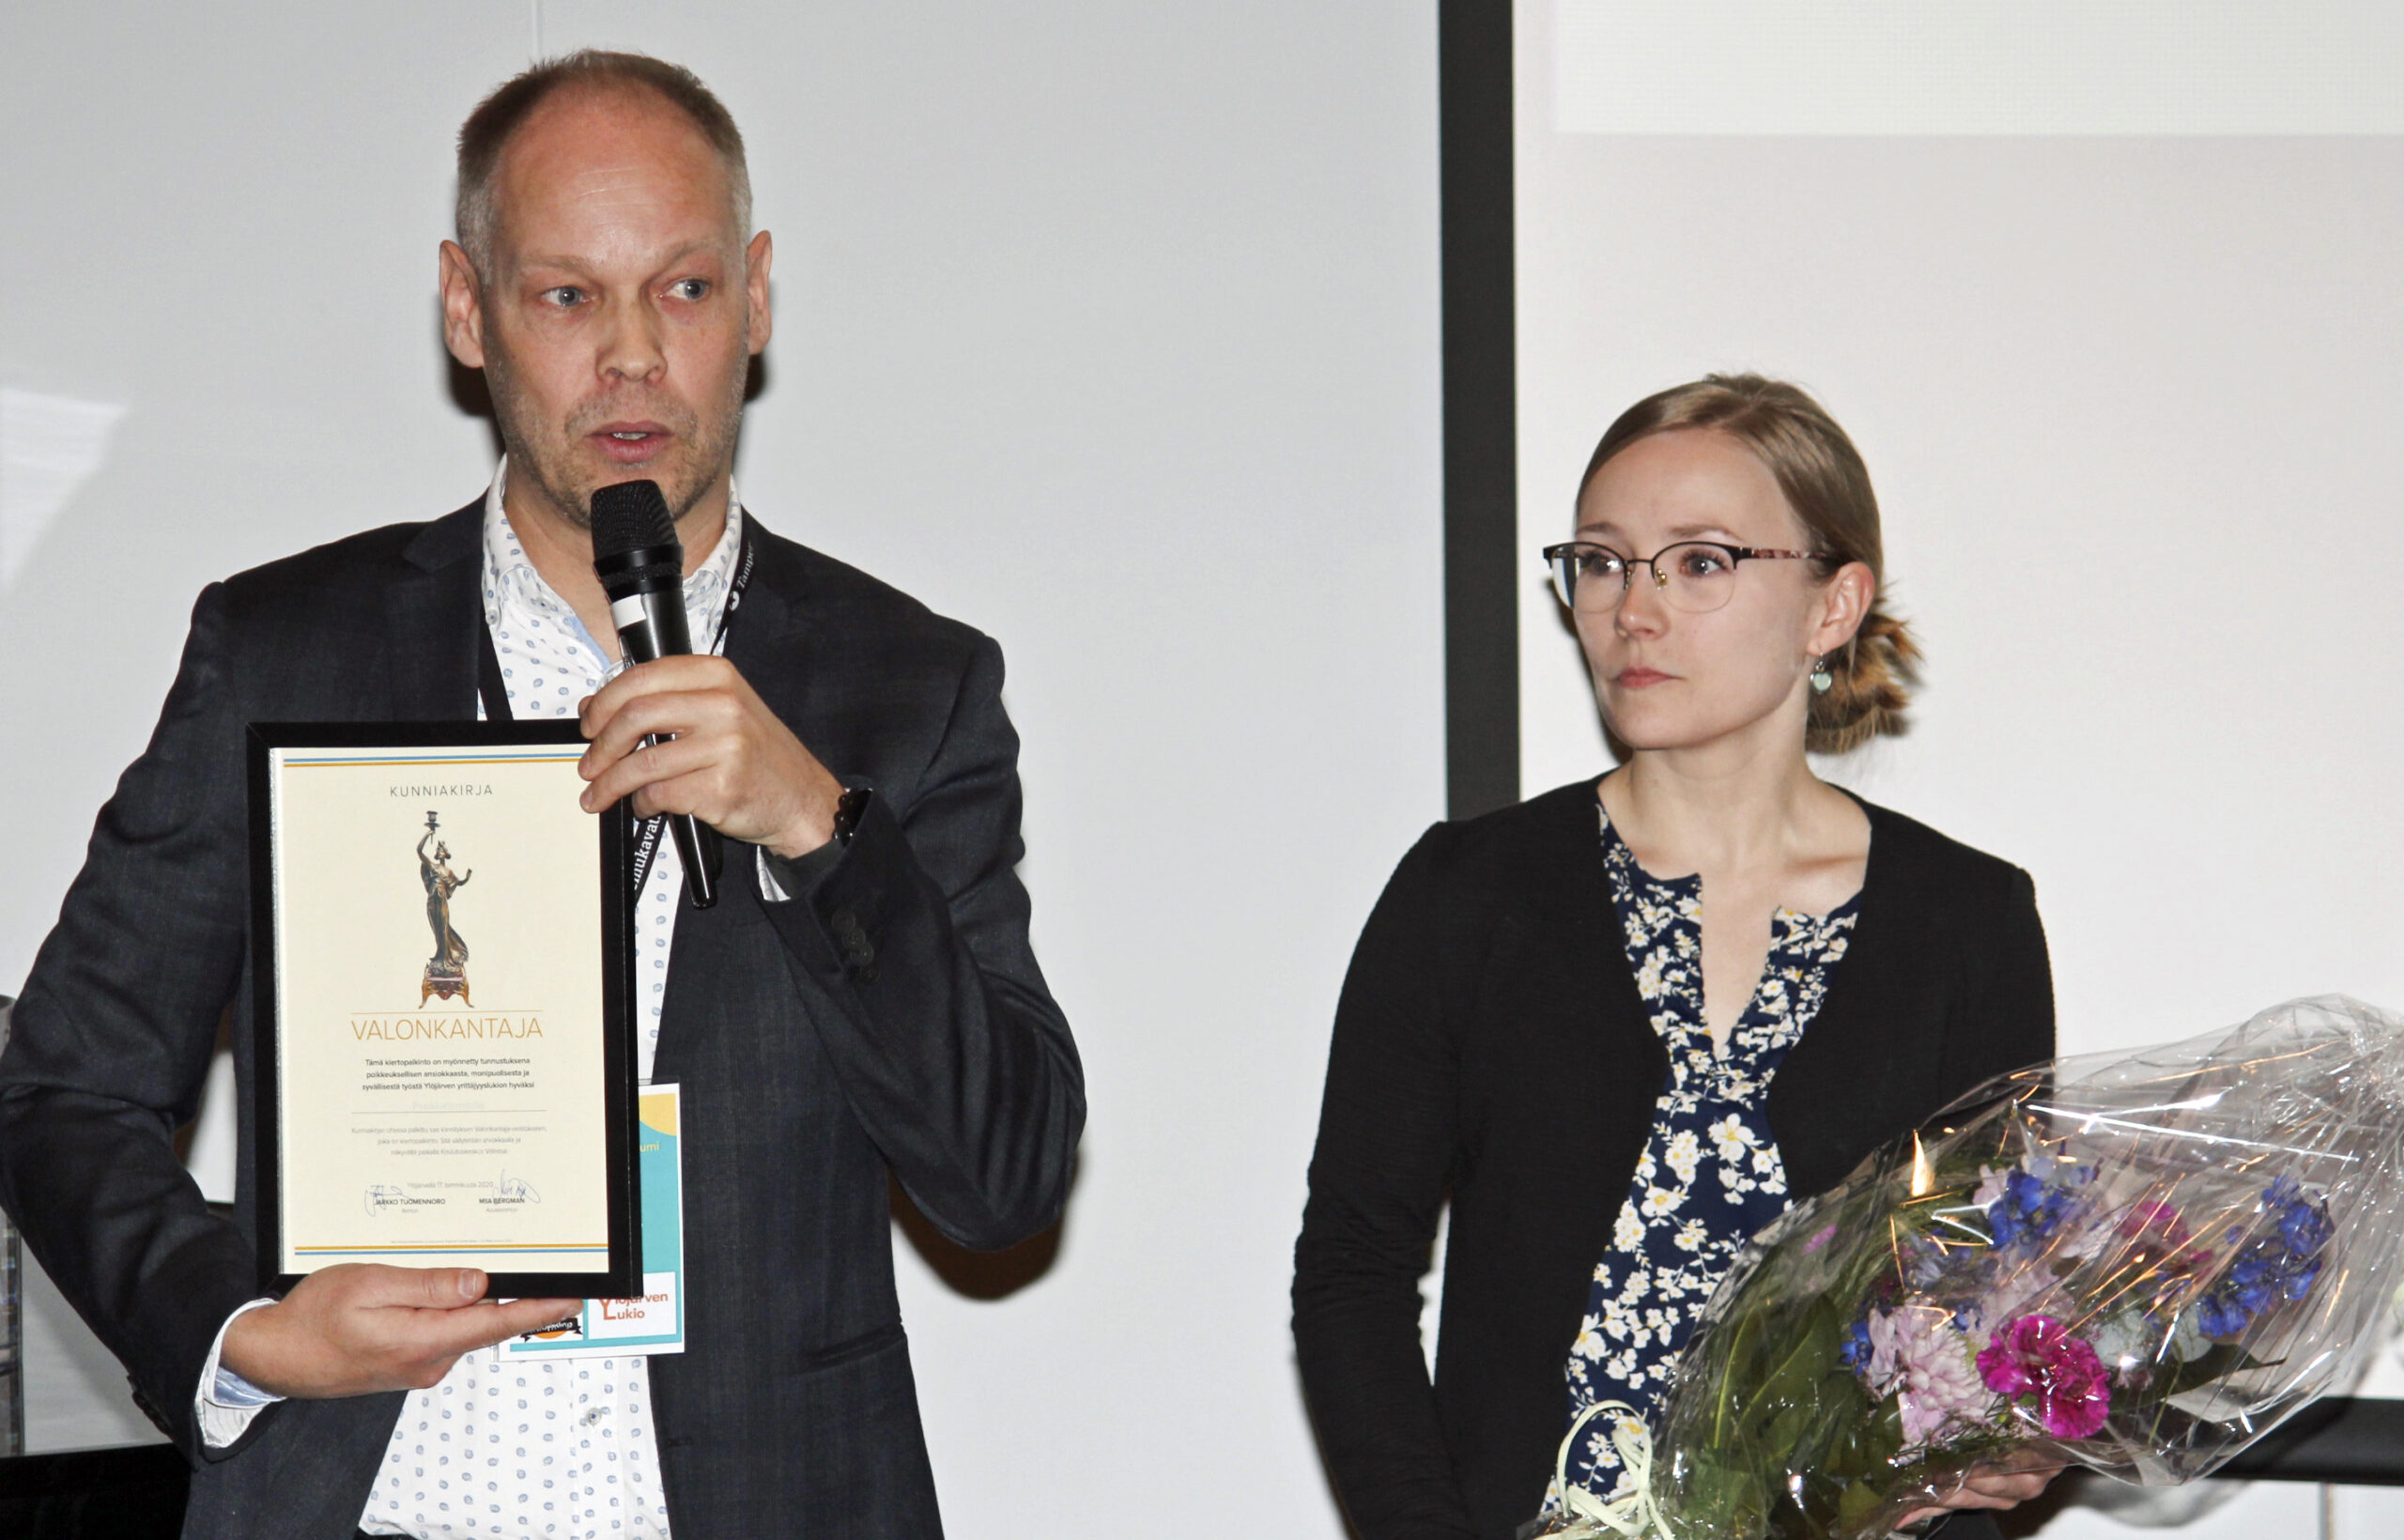 Proakatemia sai Ylöjärven lukion ensimmäisen Valonkantaja-palkinnon